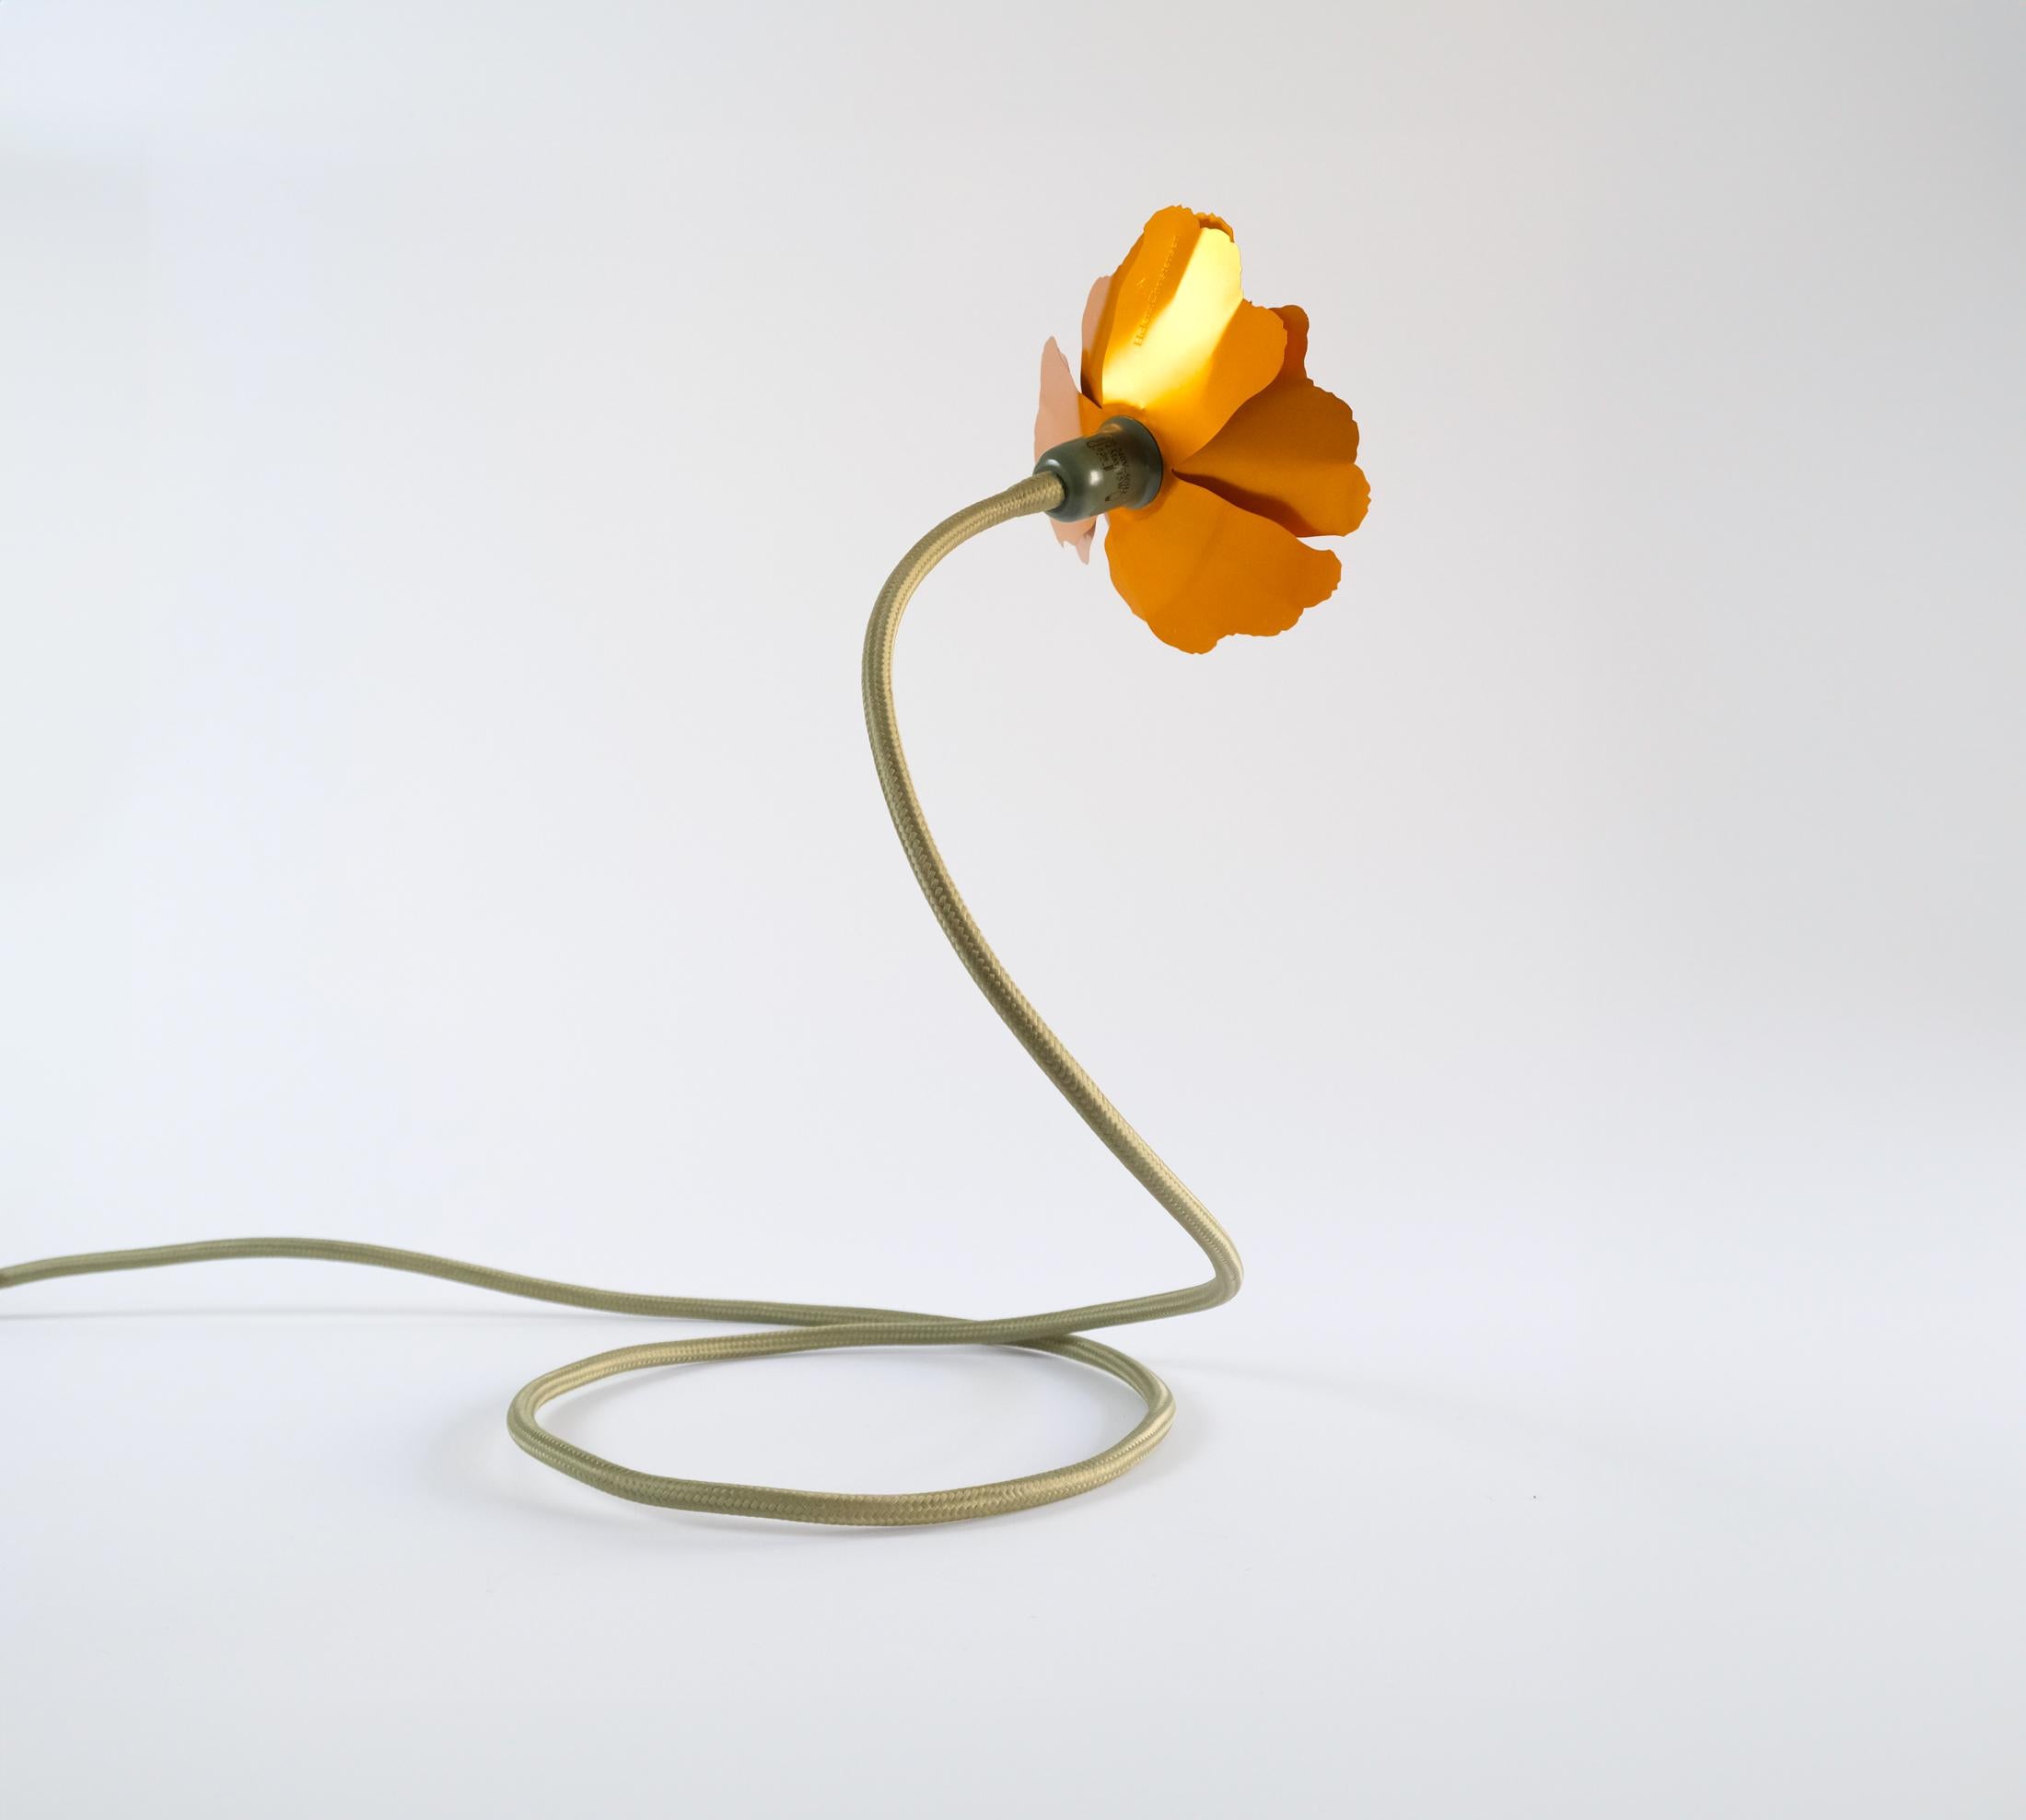 Aluminum Helena Christensen's Flexible Flower Lamp for Habitat “V.I.P” Collection, 2004 For Sale